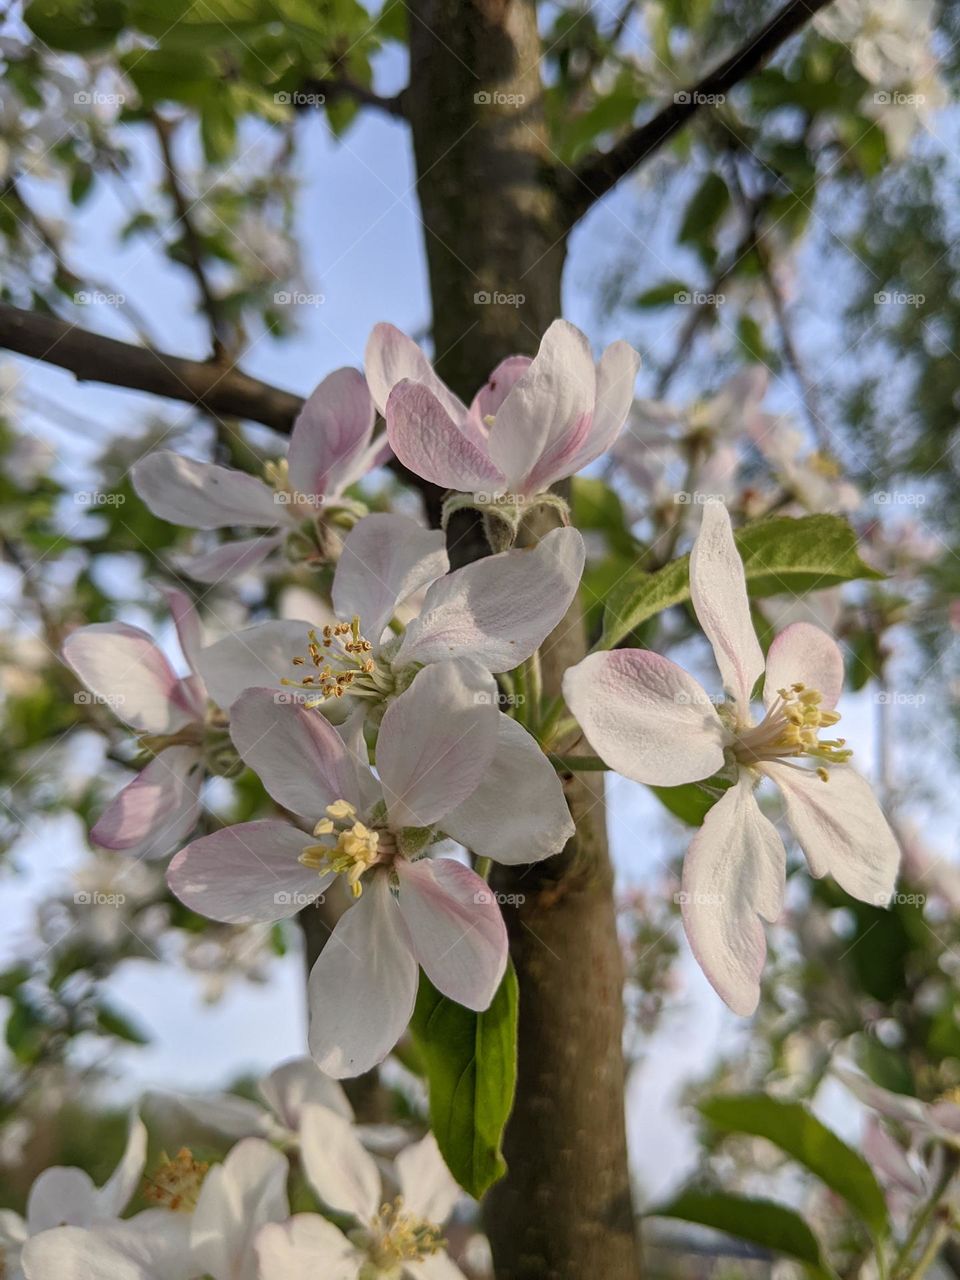 appleblossems in spring